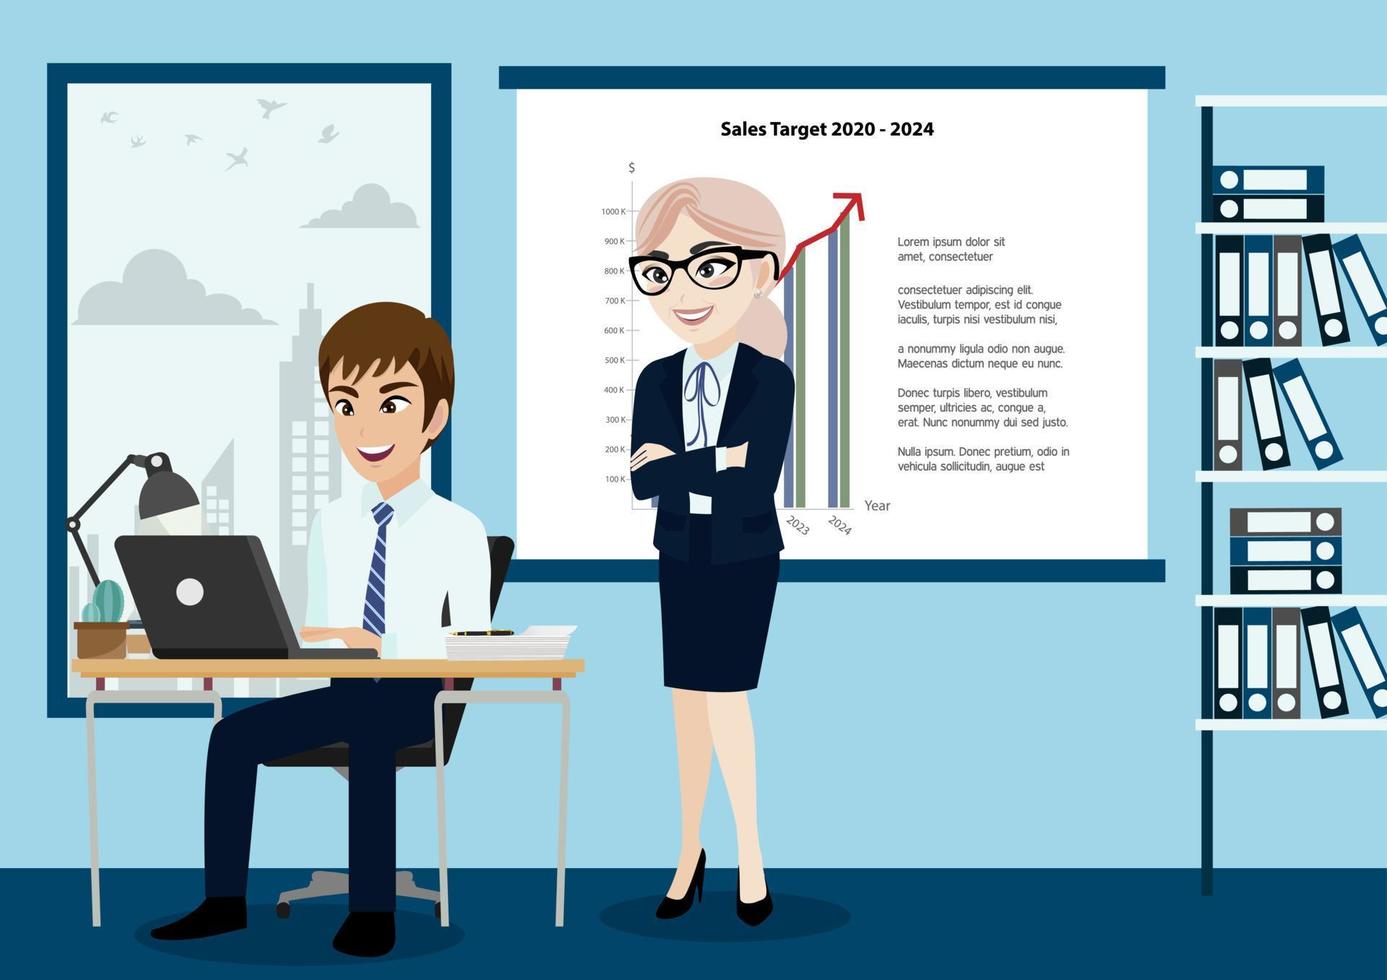 gruppo di uomini d'affari, capo e personale o lavoratori in ufficio sfondo illustrazione vettoriale in stile personaggio dei cartoni animati.